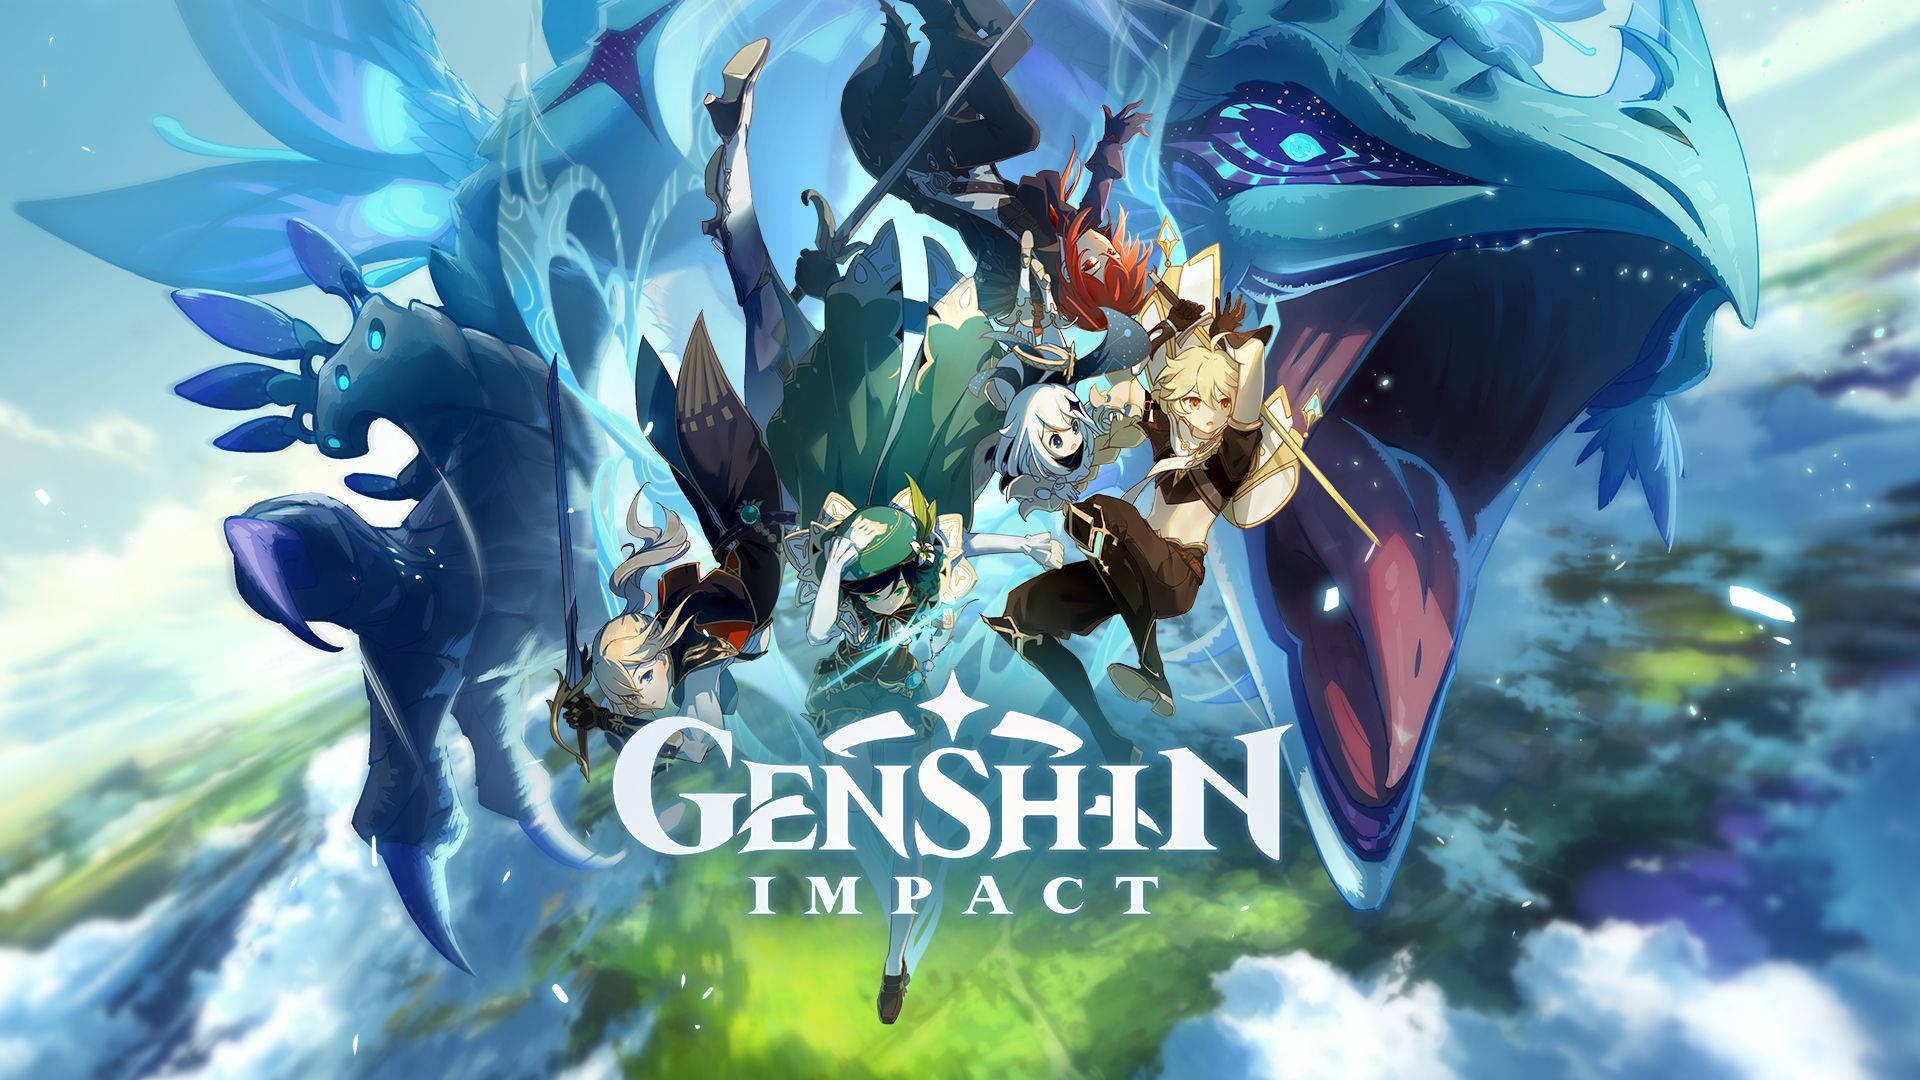 Free Genshin Impact Wallpaper: Khám phá Trò chơi Genshin Impact với bộ sưu tập hình nền miễn phí đặc sắc. Tất cả các hình nền đều được thiết kế chất lượng cao và đầy sức hút, mang đến cho bạn một trải nghiệm đẹp mắt và tuyệt vời. 